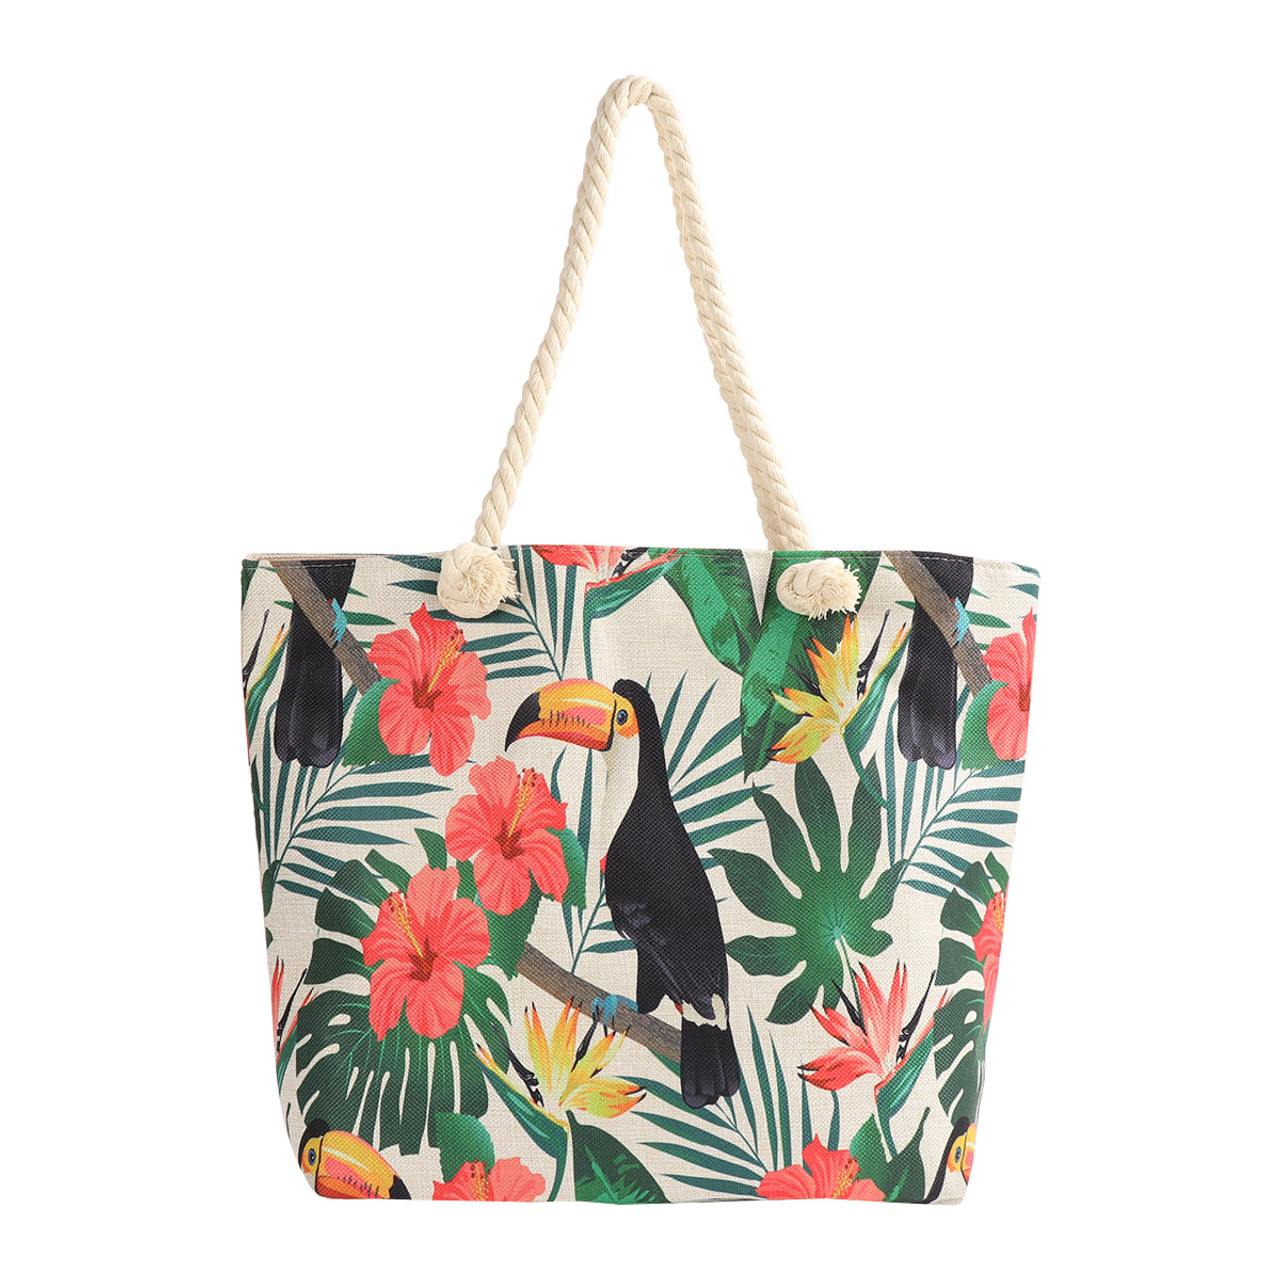  Nollia Women's Summer Tote Bag, Large Shoulder Bag +